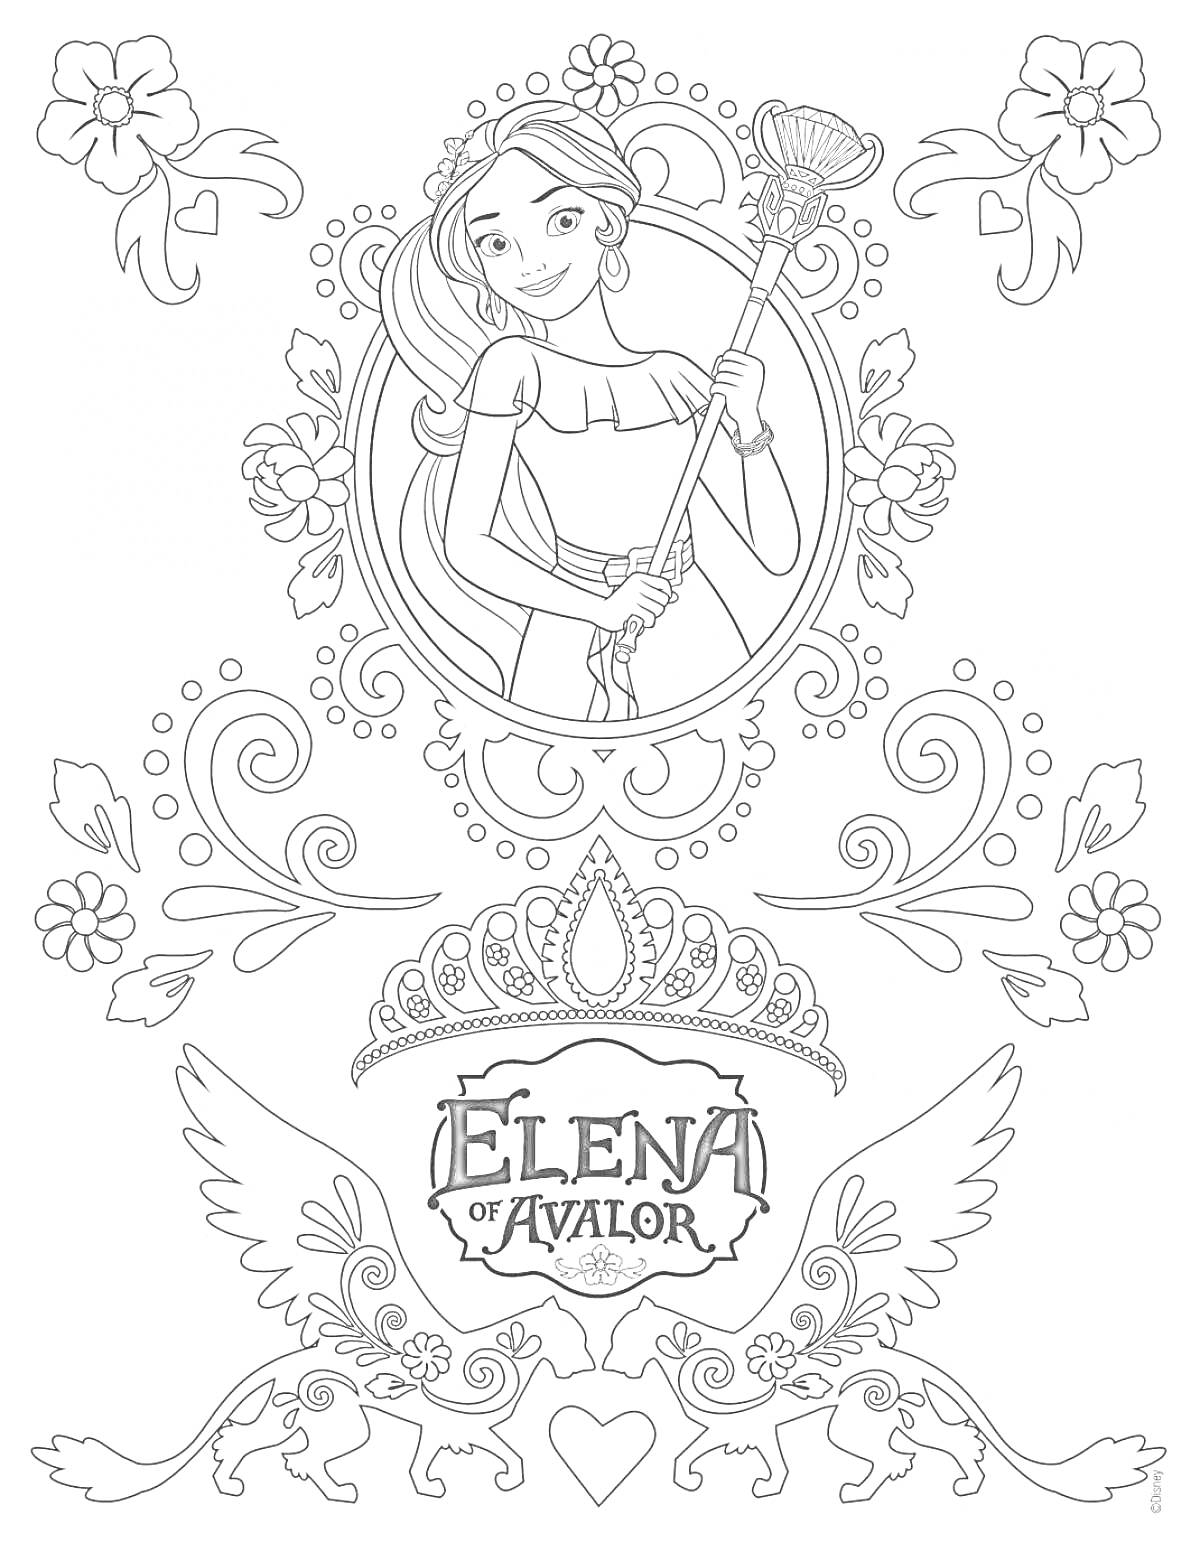 Елена из Авалора с скипетром на фоне декоративных узоров и коронованного логотипа